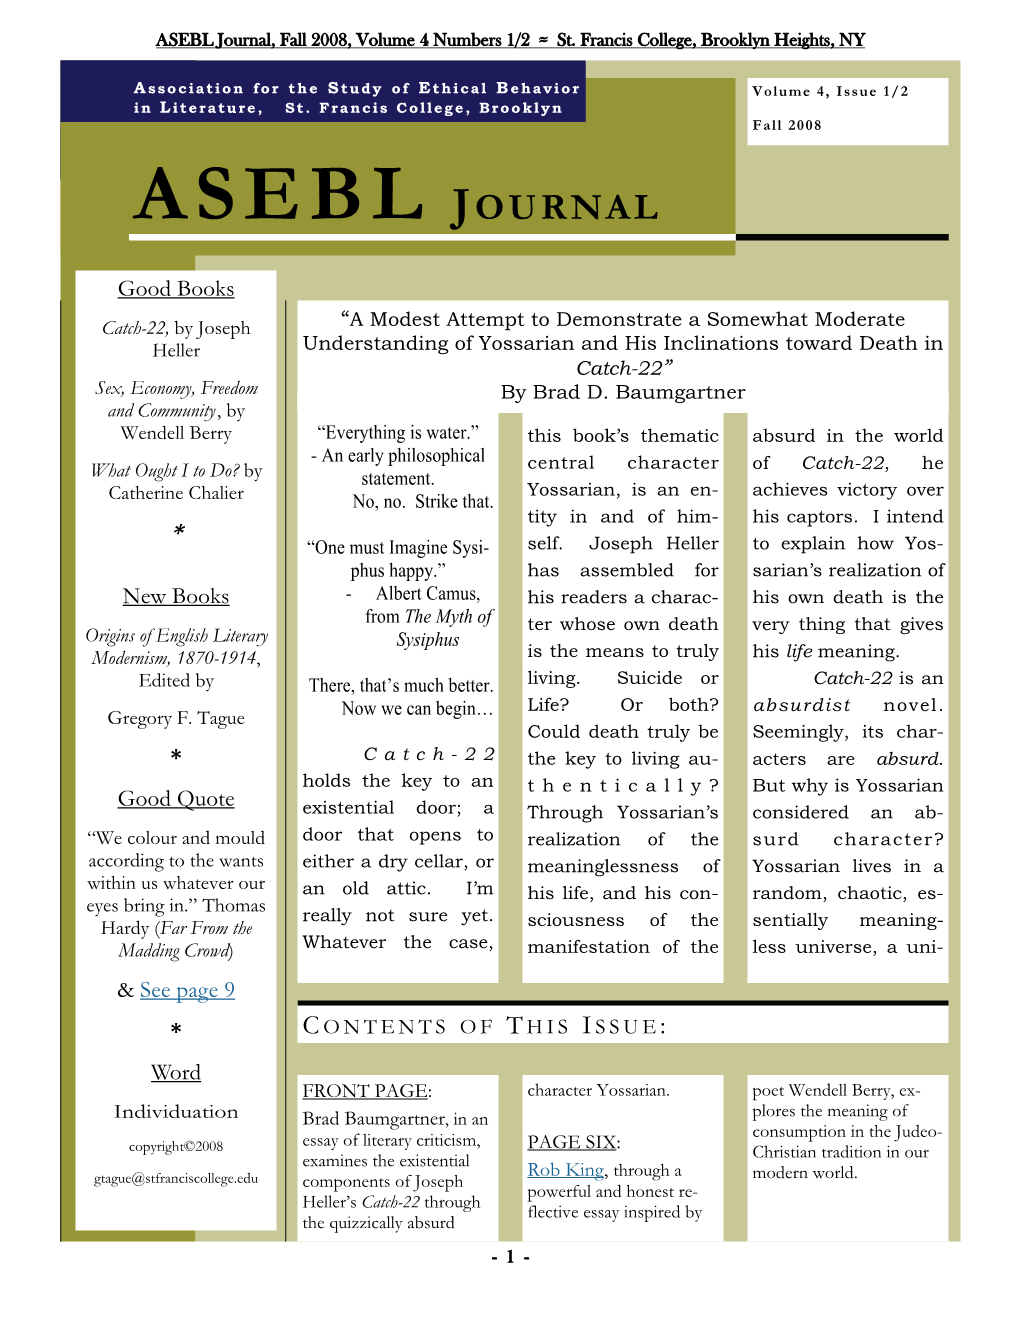 ASEBL Journal Vol 4 No 1 Fall 2008